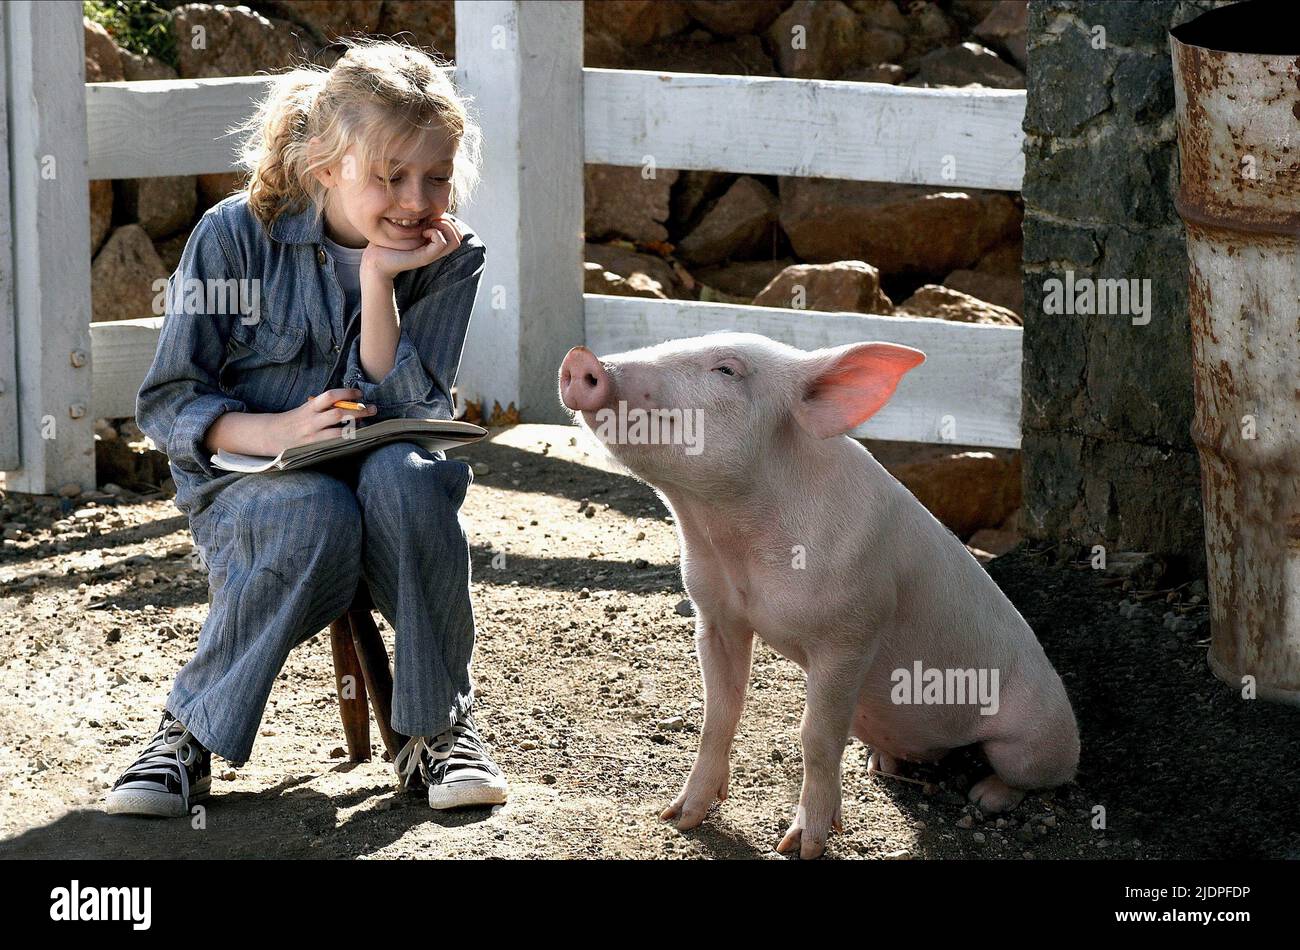 Wilbur the pig -Fotos und -Bildmaterial in hoher Auflösung – Alamy